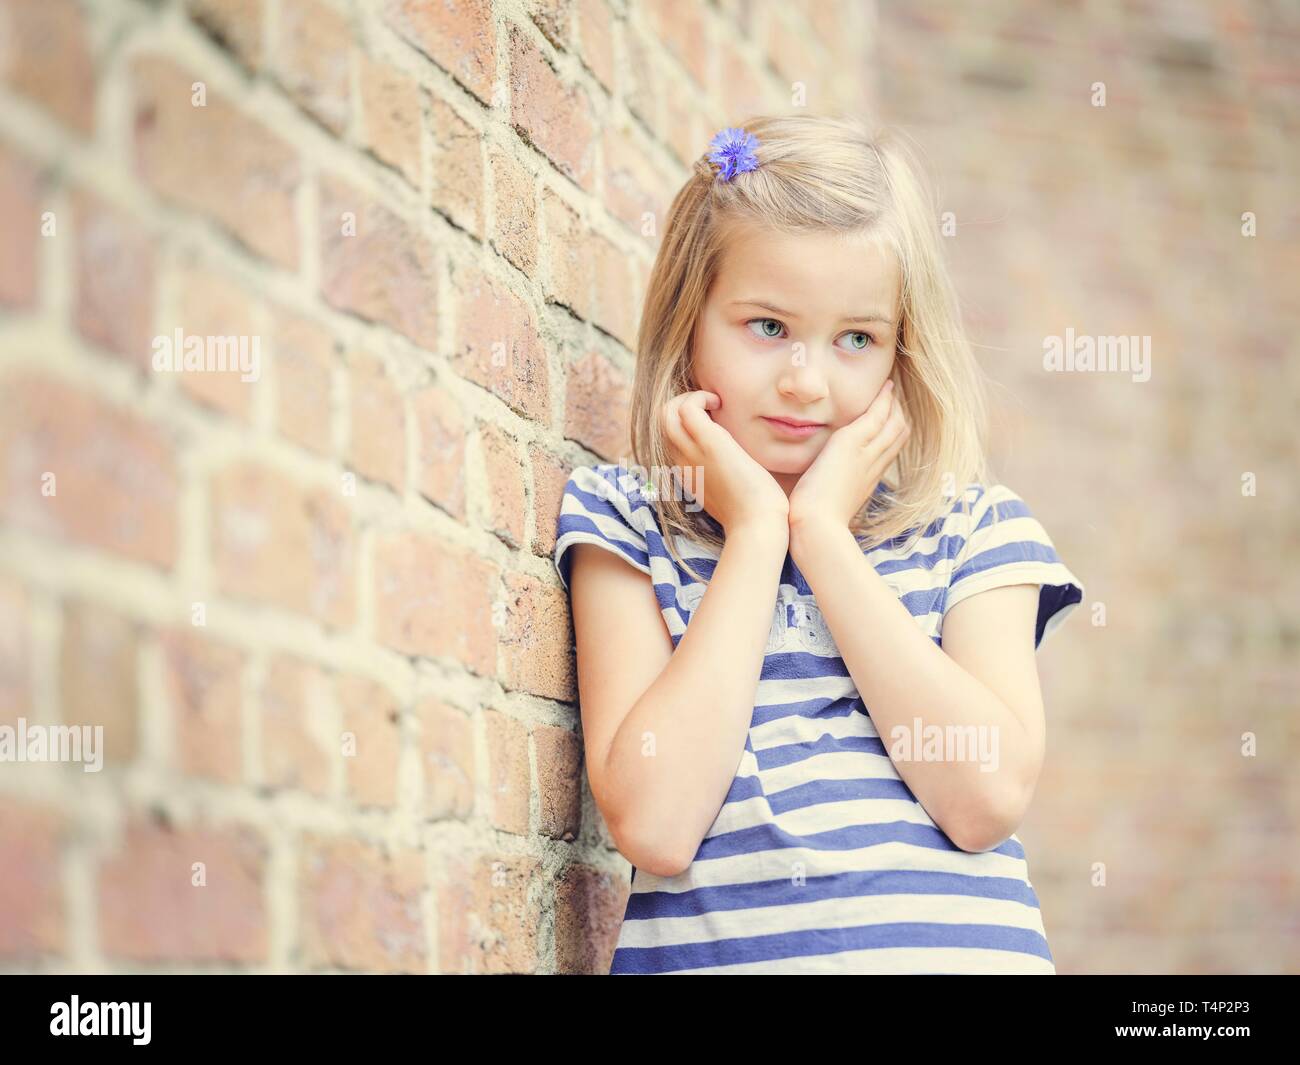 Ragazza, 10 anni, si appoggia contro un muro, sguardo timido, Ritratto, Germania Foto Stock